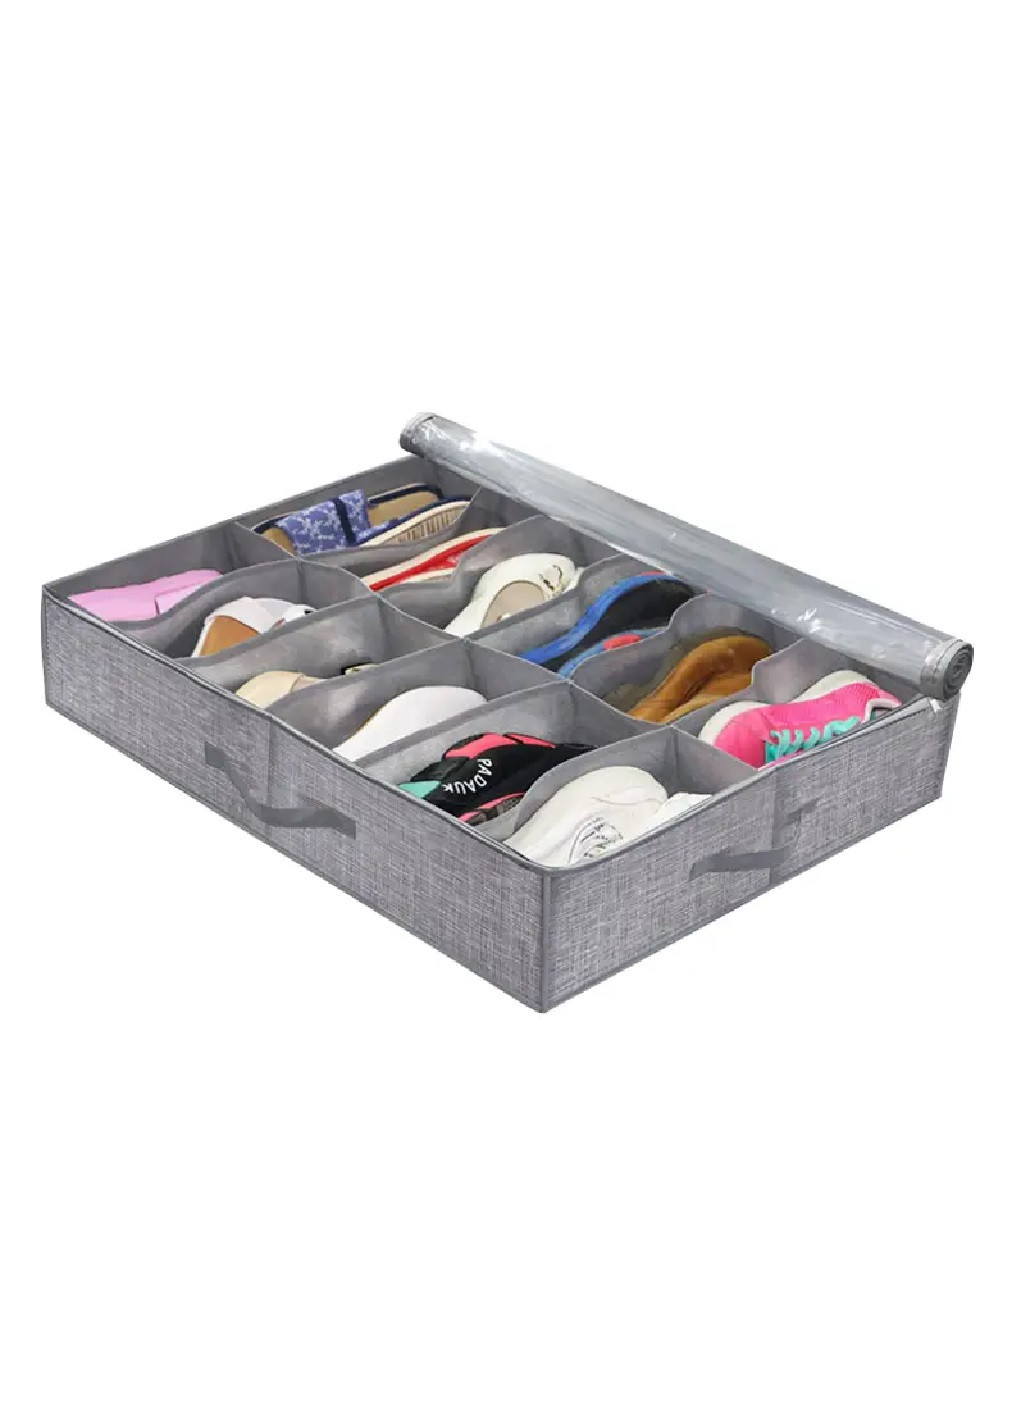 Органайзер короб ящик складной с отделами для хранения вещей обуви тапочек 12 карманов 74х59х13 см (475656-Prob) Серый Unbranded (269901041)